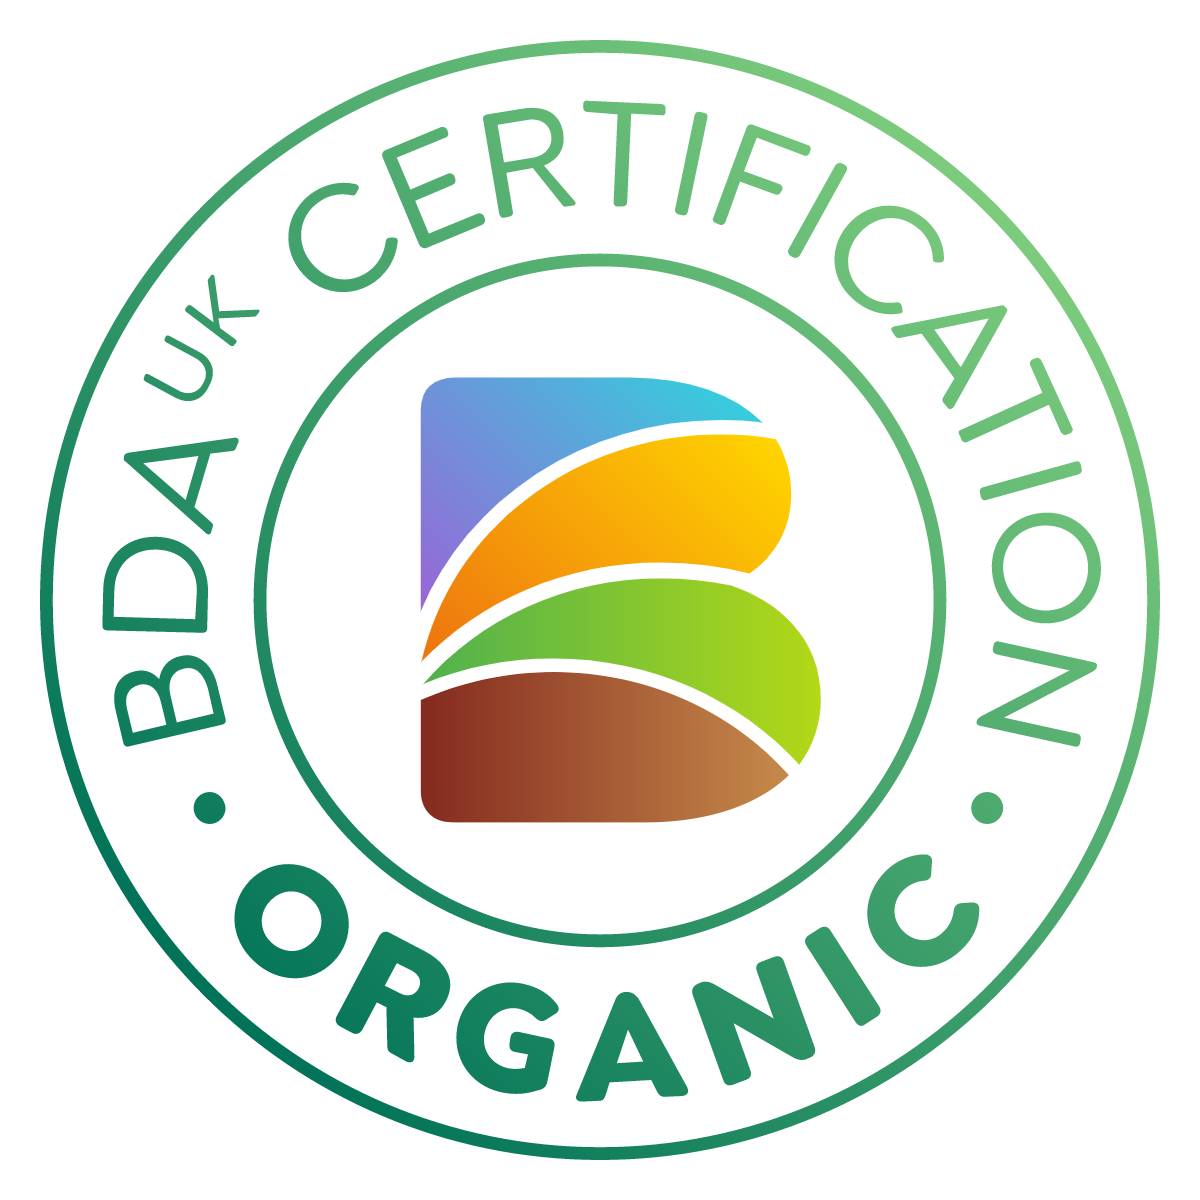 biodynamic association logo for organic food and drink